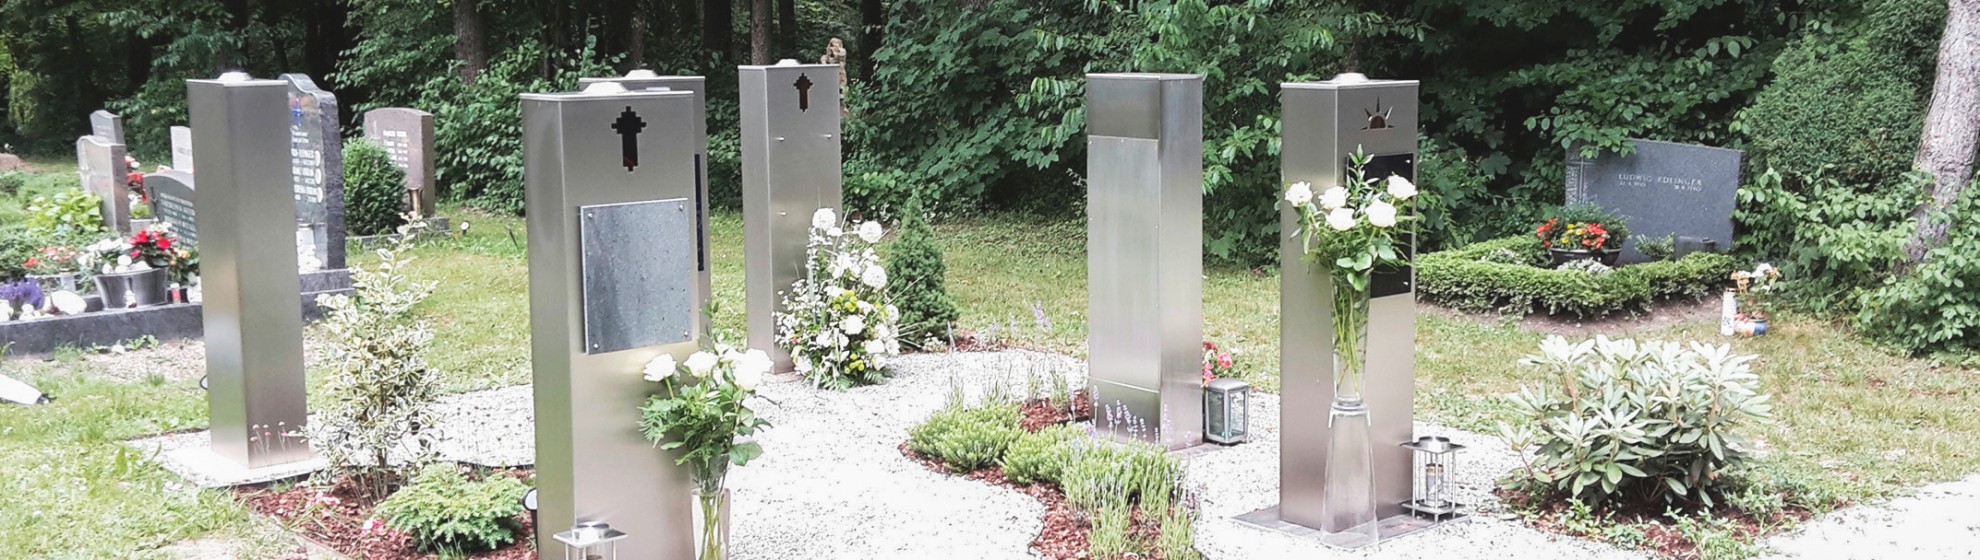 Stelengräber auf Kiselfeld mit Platz für Bepflanzung